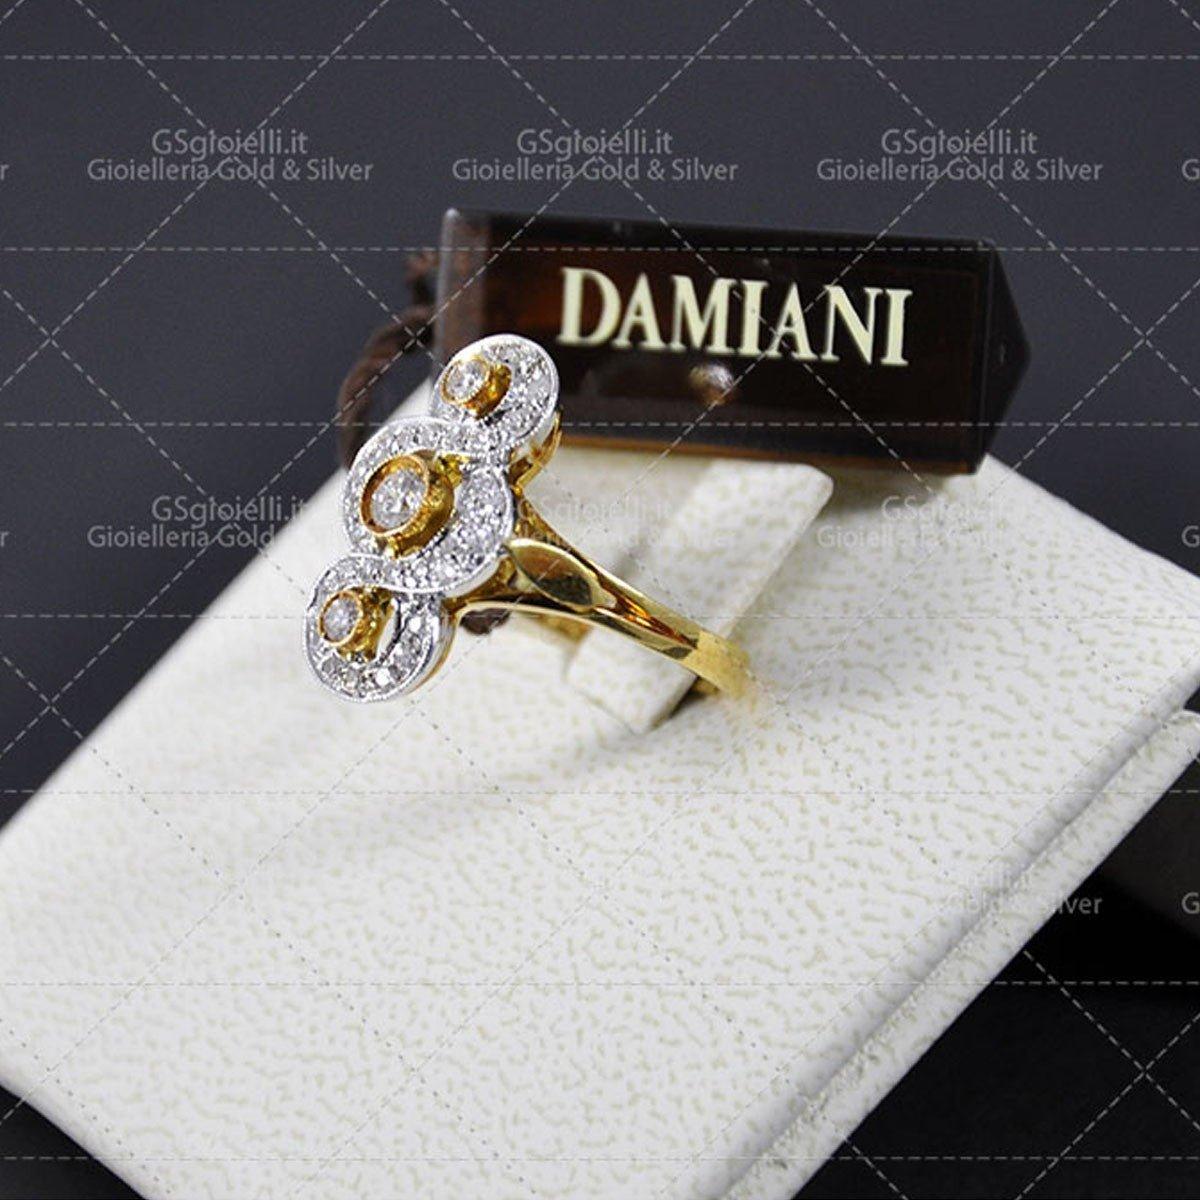 Anello Damiani diamanti taglio brillante ct.0.58 colore H if oro giallo gr.5.90